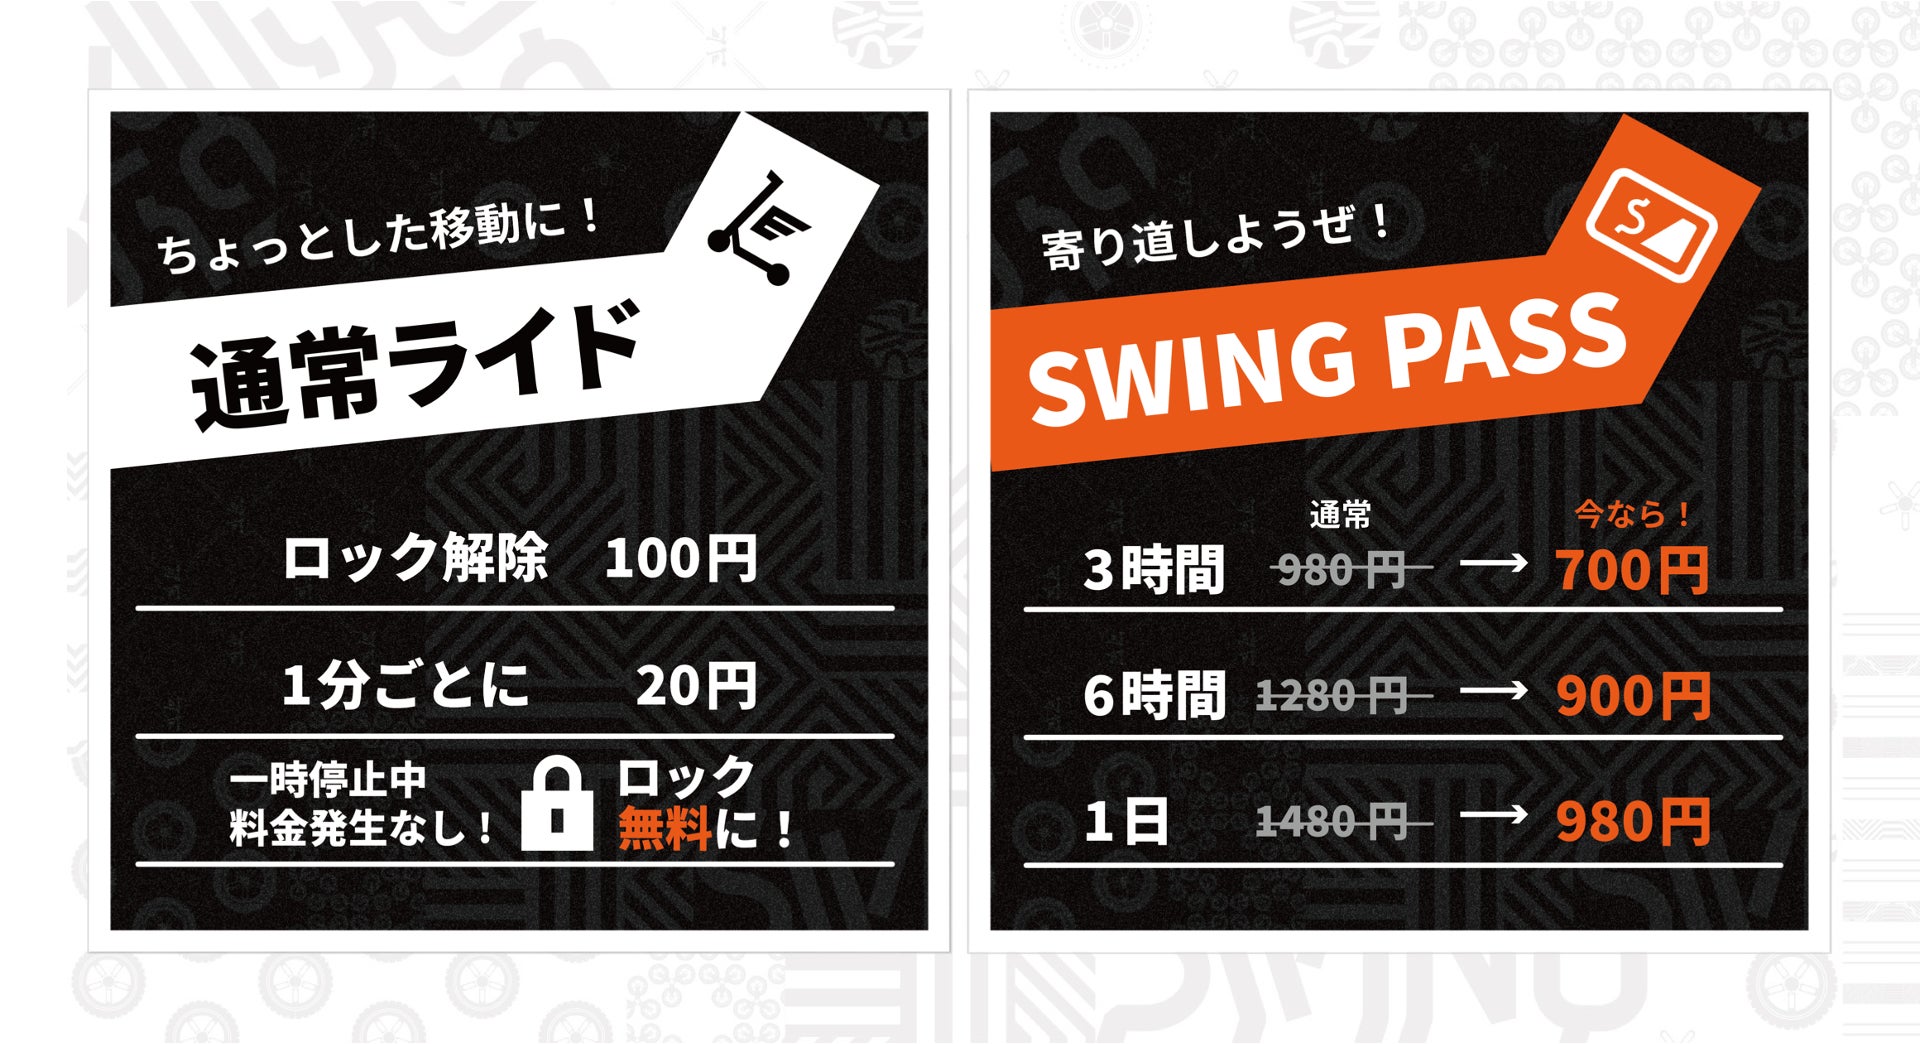 電動キックボードシェアサービスSWINGは、チュ・ヒョニョンをイメージキャラクターに！1日980円の乗り放題プラン「SWING PASS」を発表。のサブ画像3